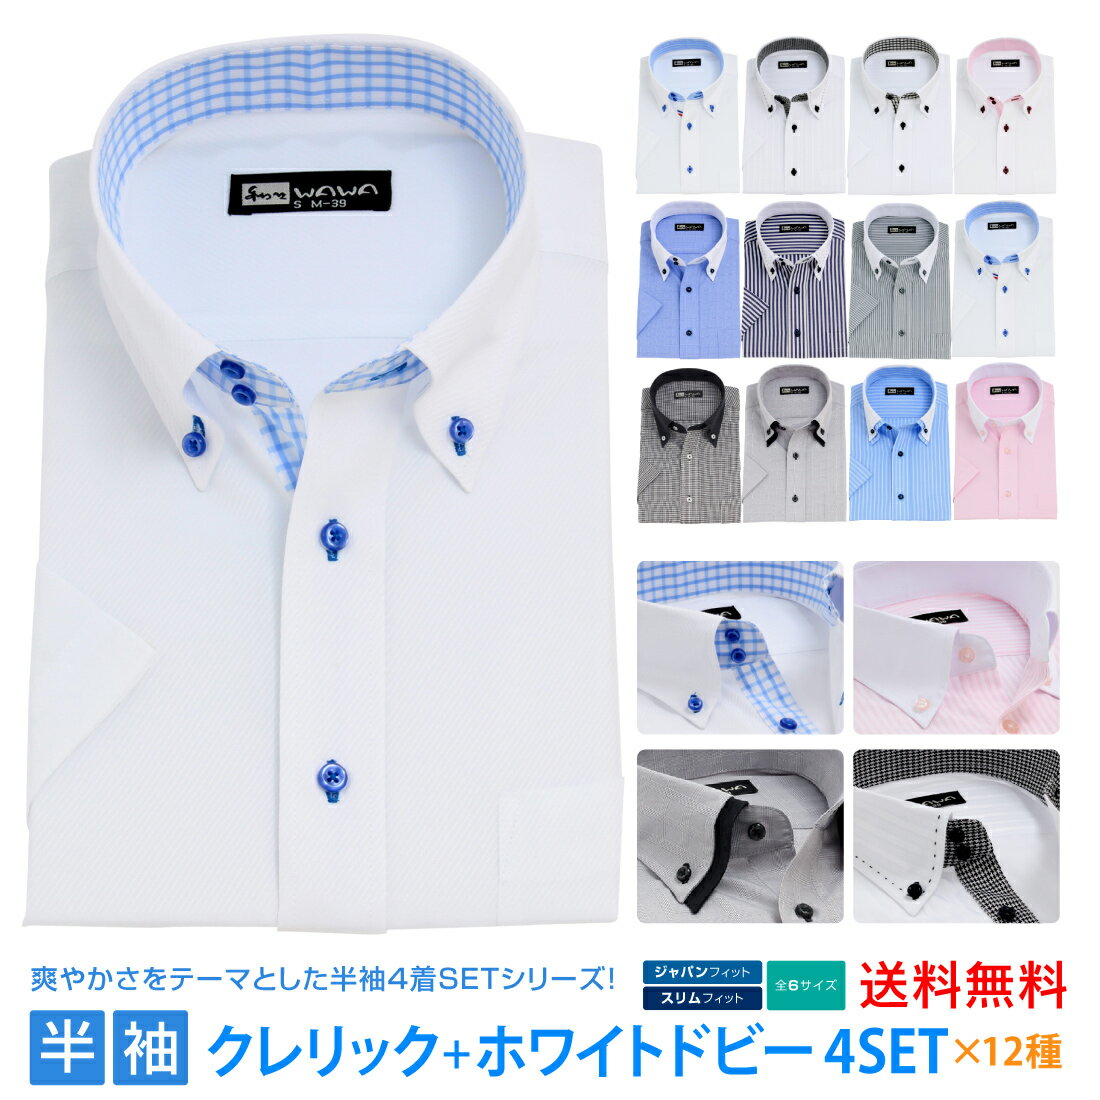 半袖ワイシャツ 半袖 4枚セット クレリック 白 ドビー メンズ ワイシャツ ボタンダウン ドウェ 形態安定 Yシャツ ビジネス ホワイト 12タイプ 6サイズ スリム 標準体 M L LL 3L から選べる HC&HP4枚セット 送料無料